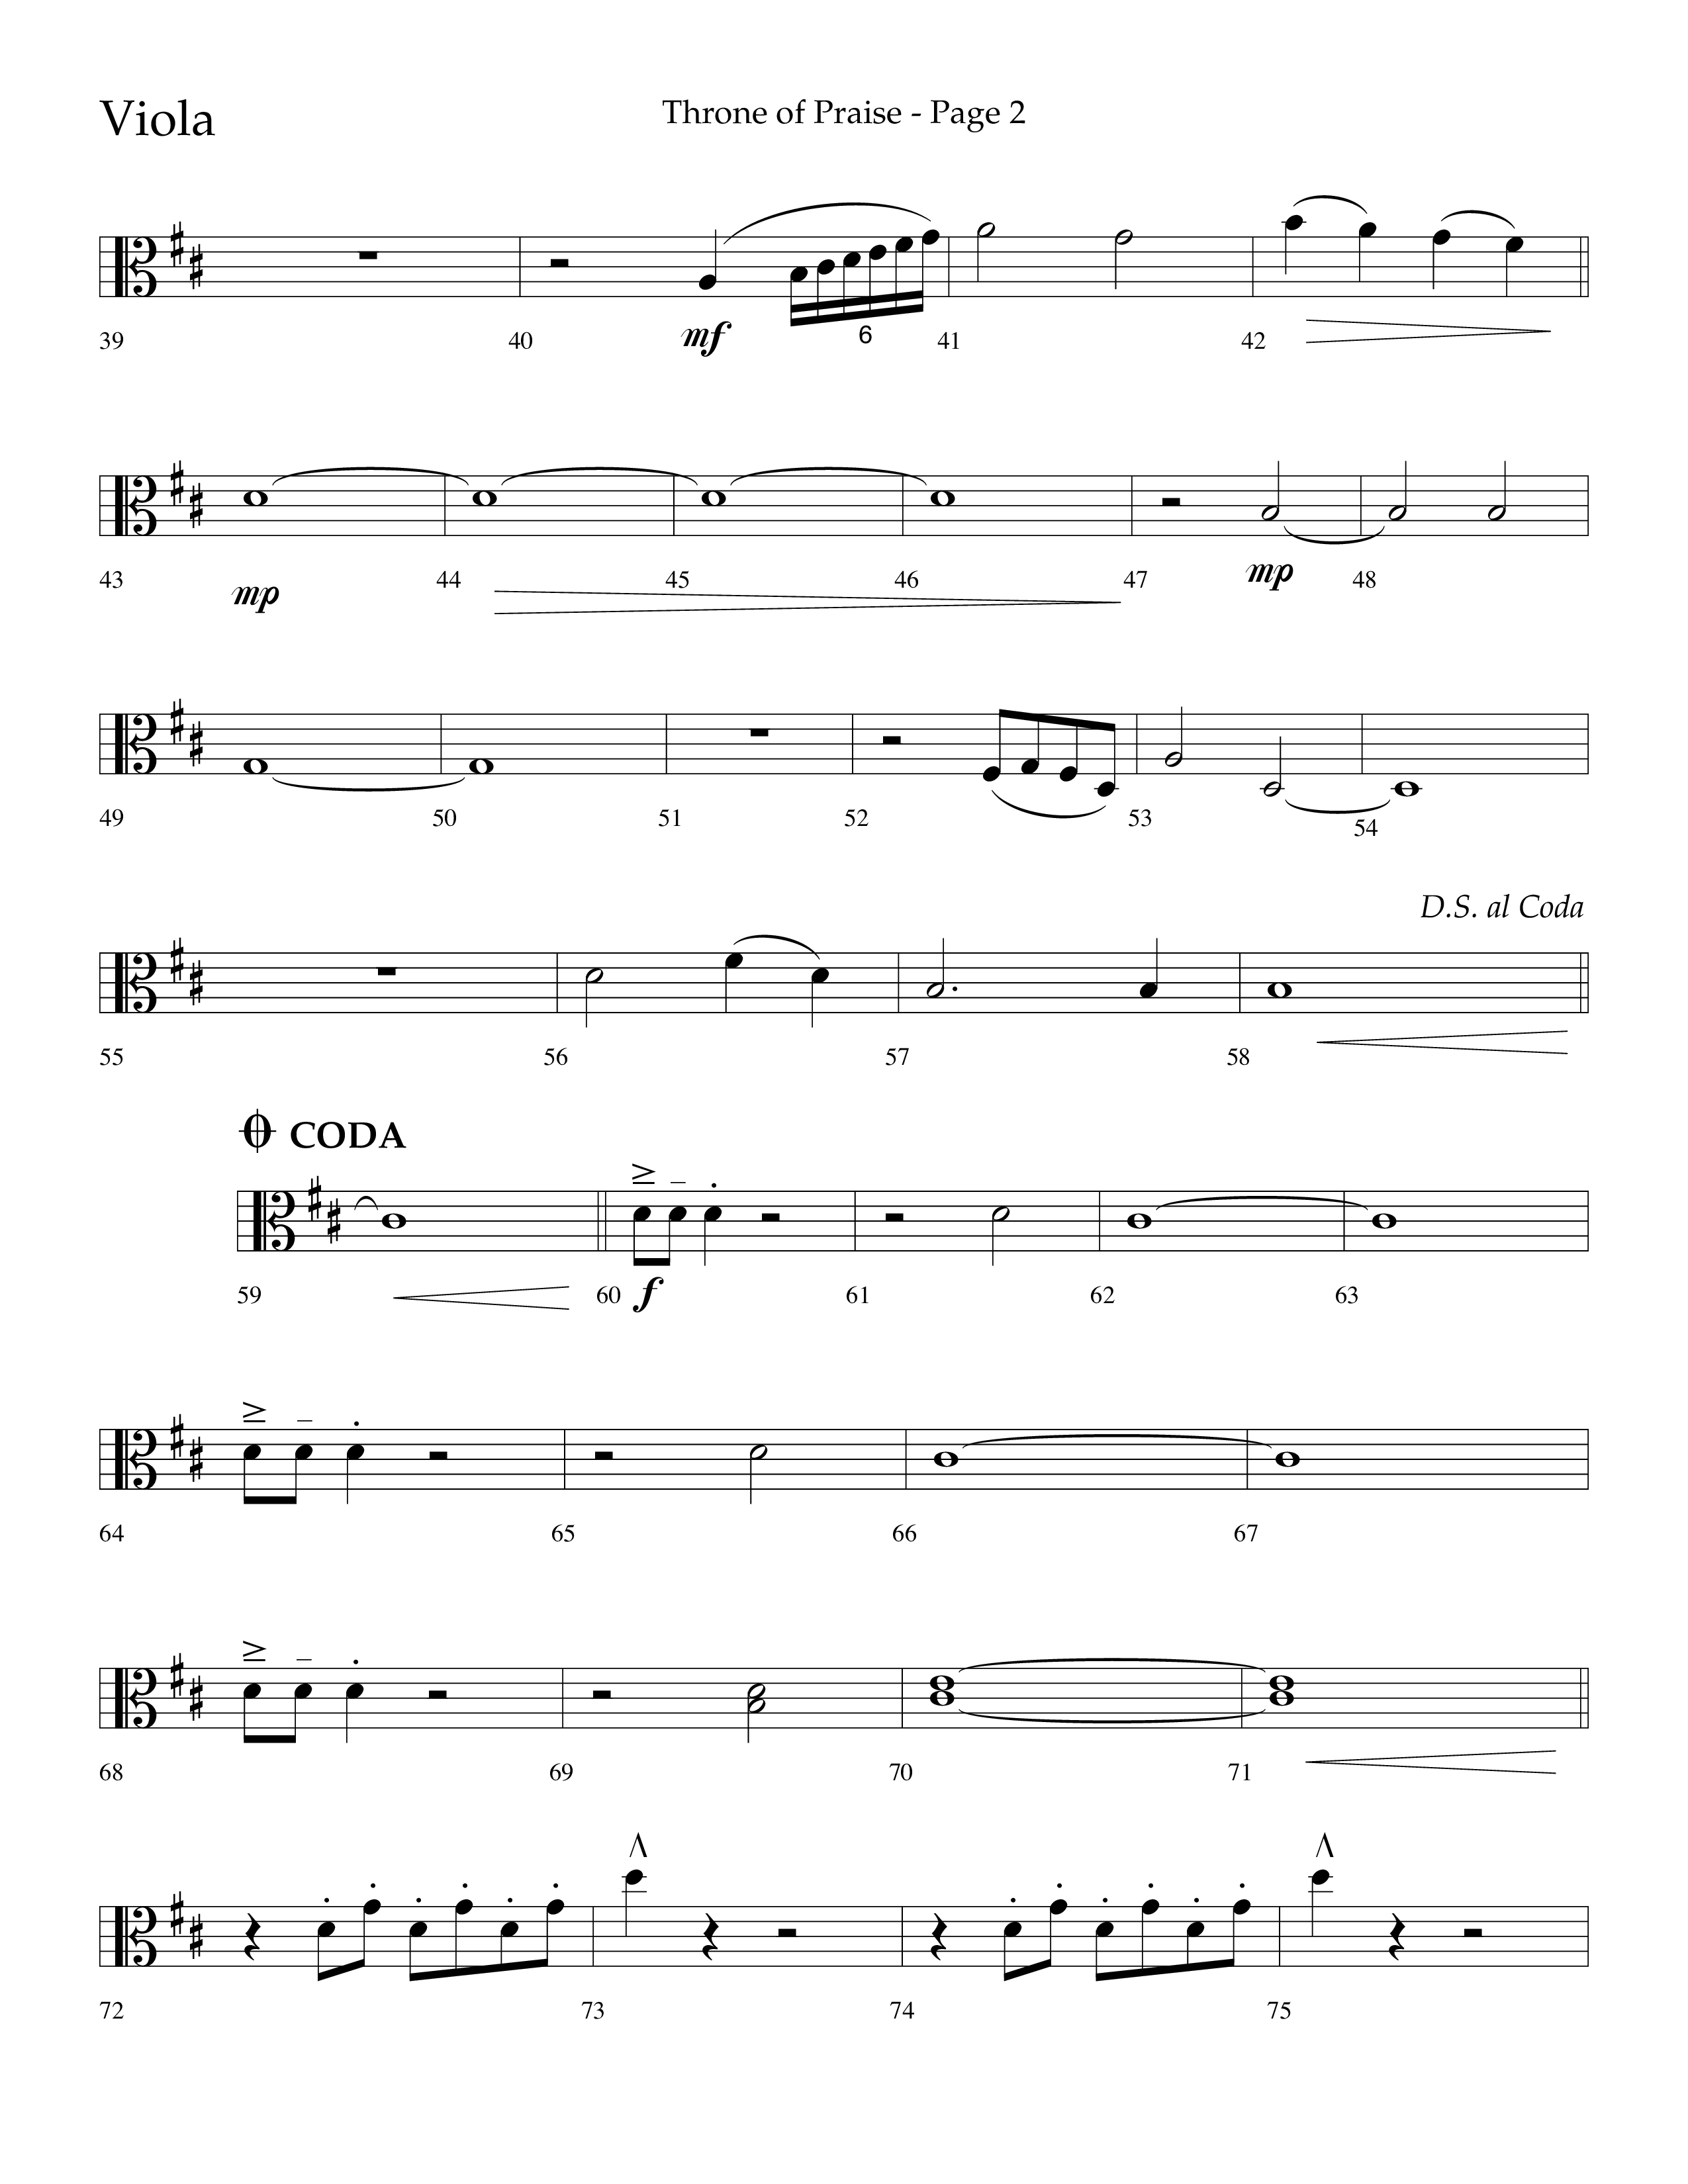 Throne Of Praise (Choral Anthem SATB) Viola (Lifeway Choral / Arr. J. Daniel Smith)